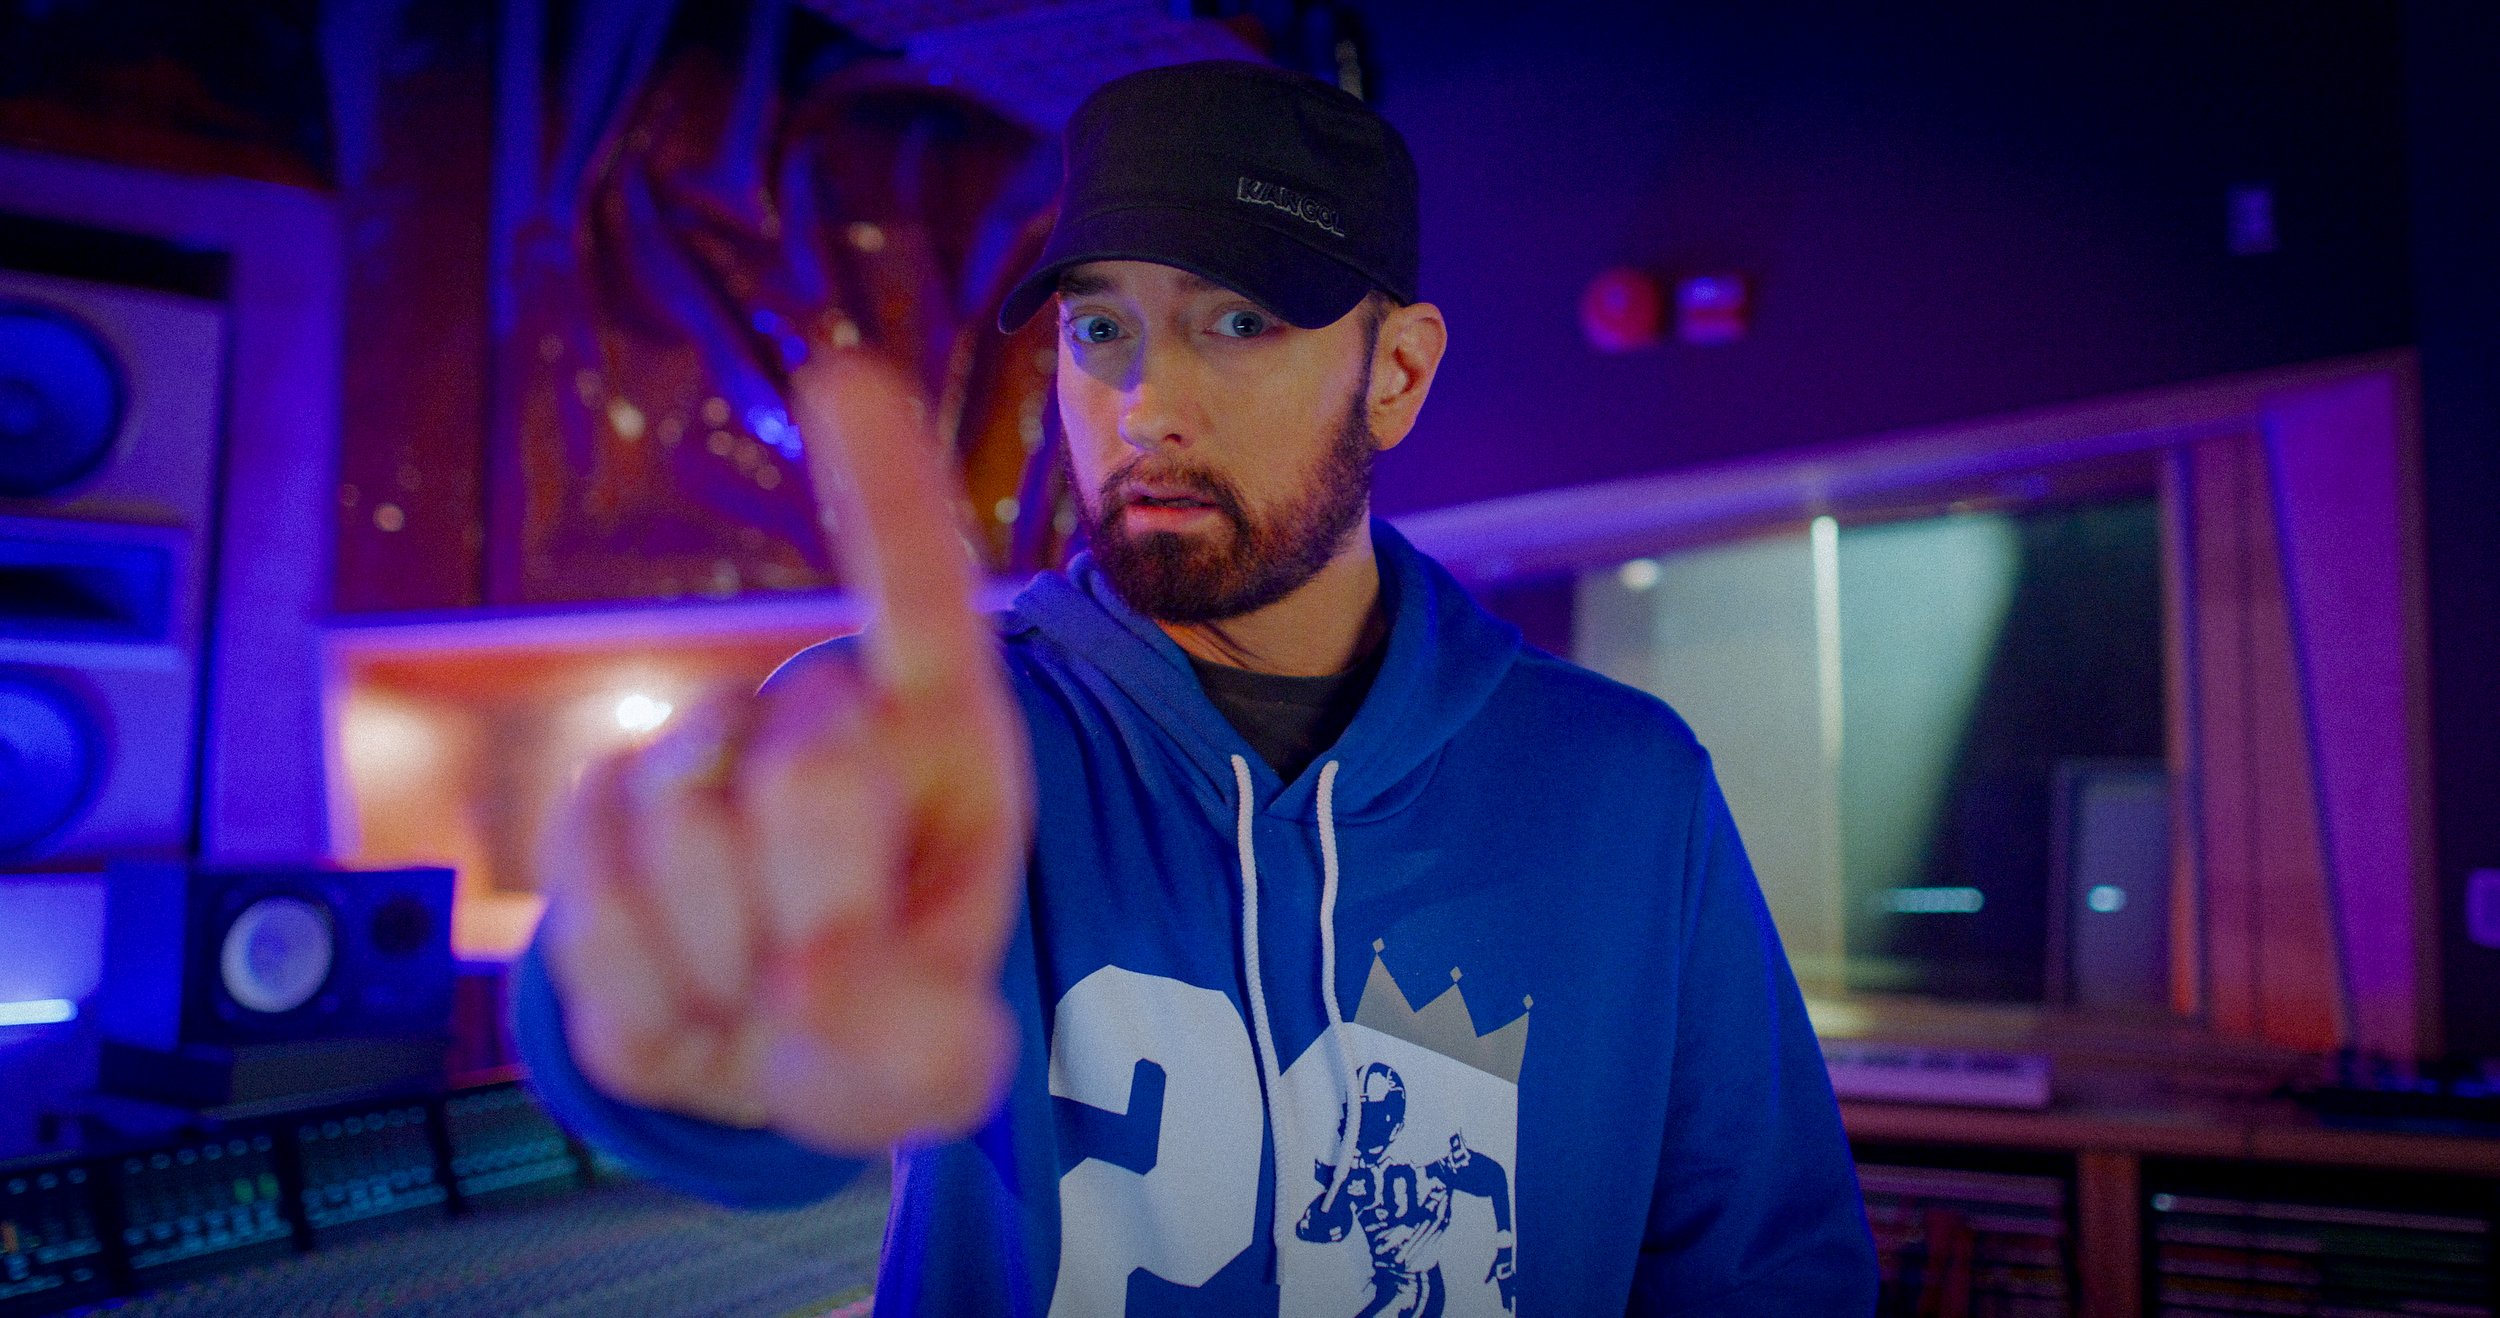 NBC-SundayNightFootball-Eminem03A.JPG